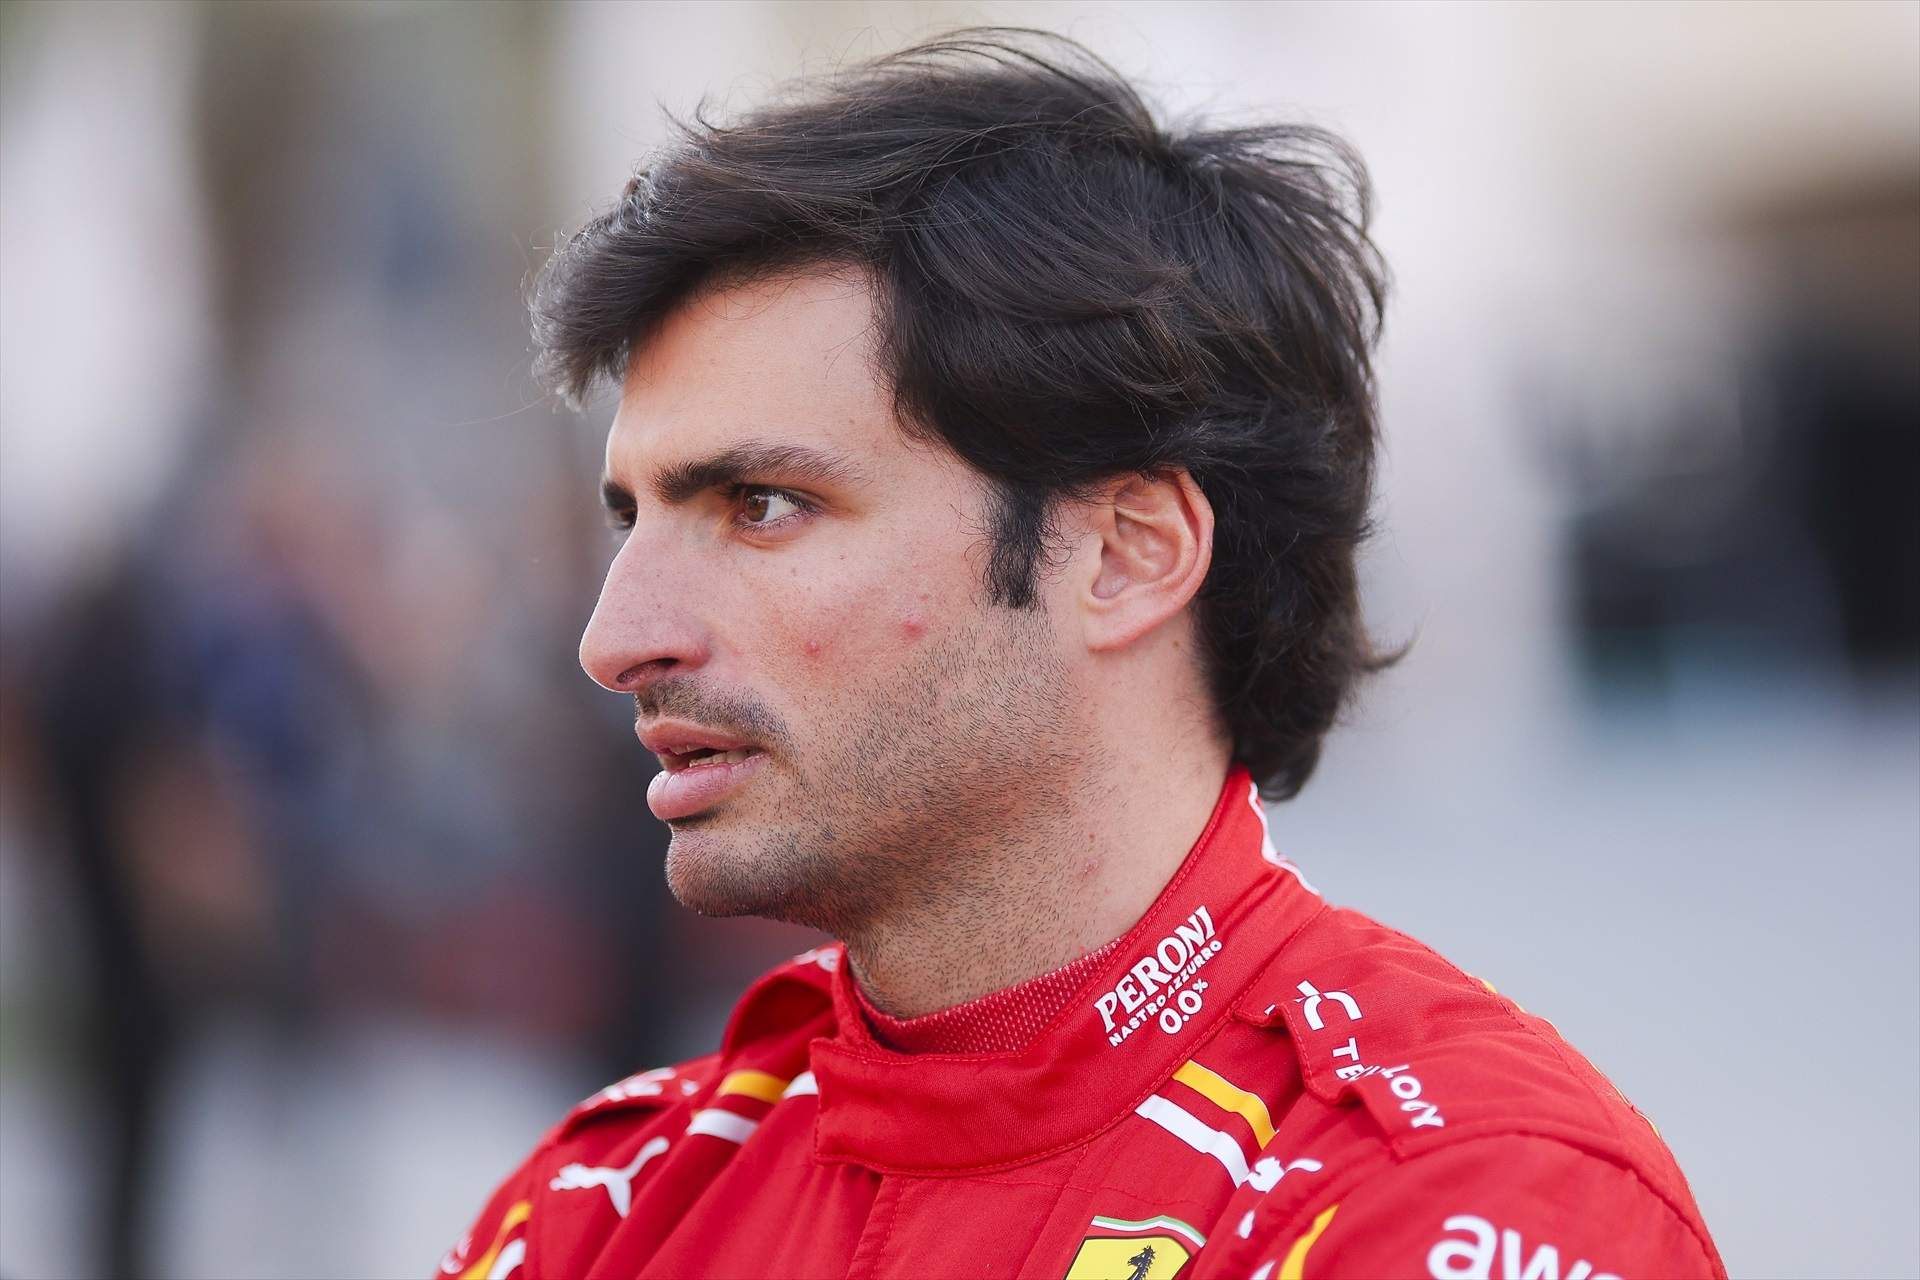 2 de les 3 opcions descarten Carlos Sainz i li queda 1 després de Ferrari